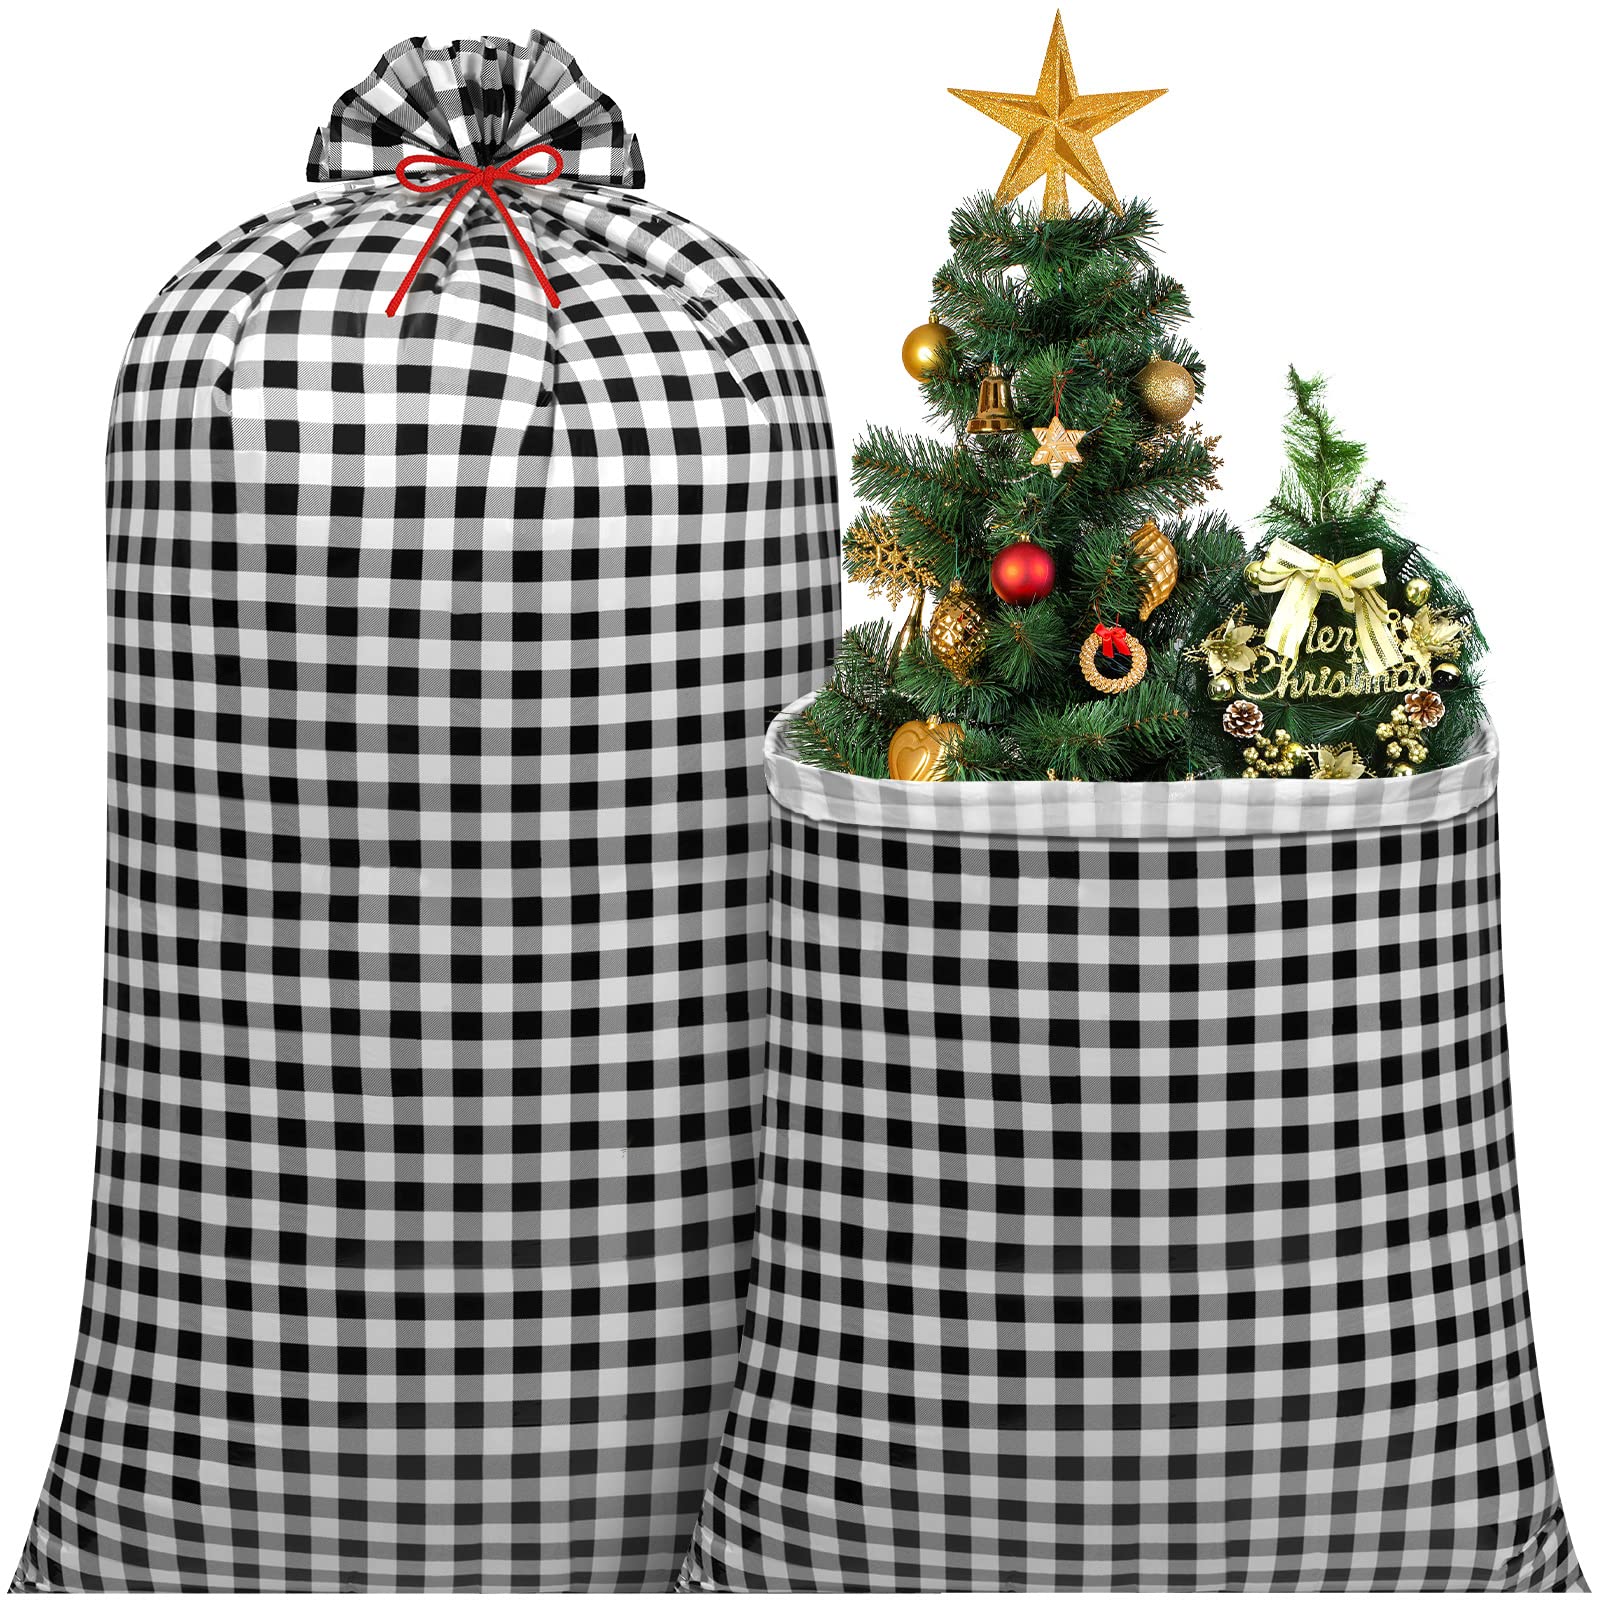 Leinuosen 2 Pcs 70 Inches Extra Large Christmas Gift Bag Oversized